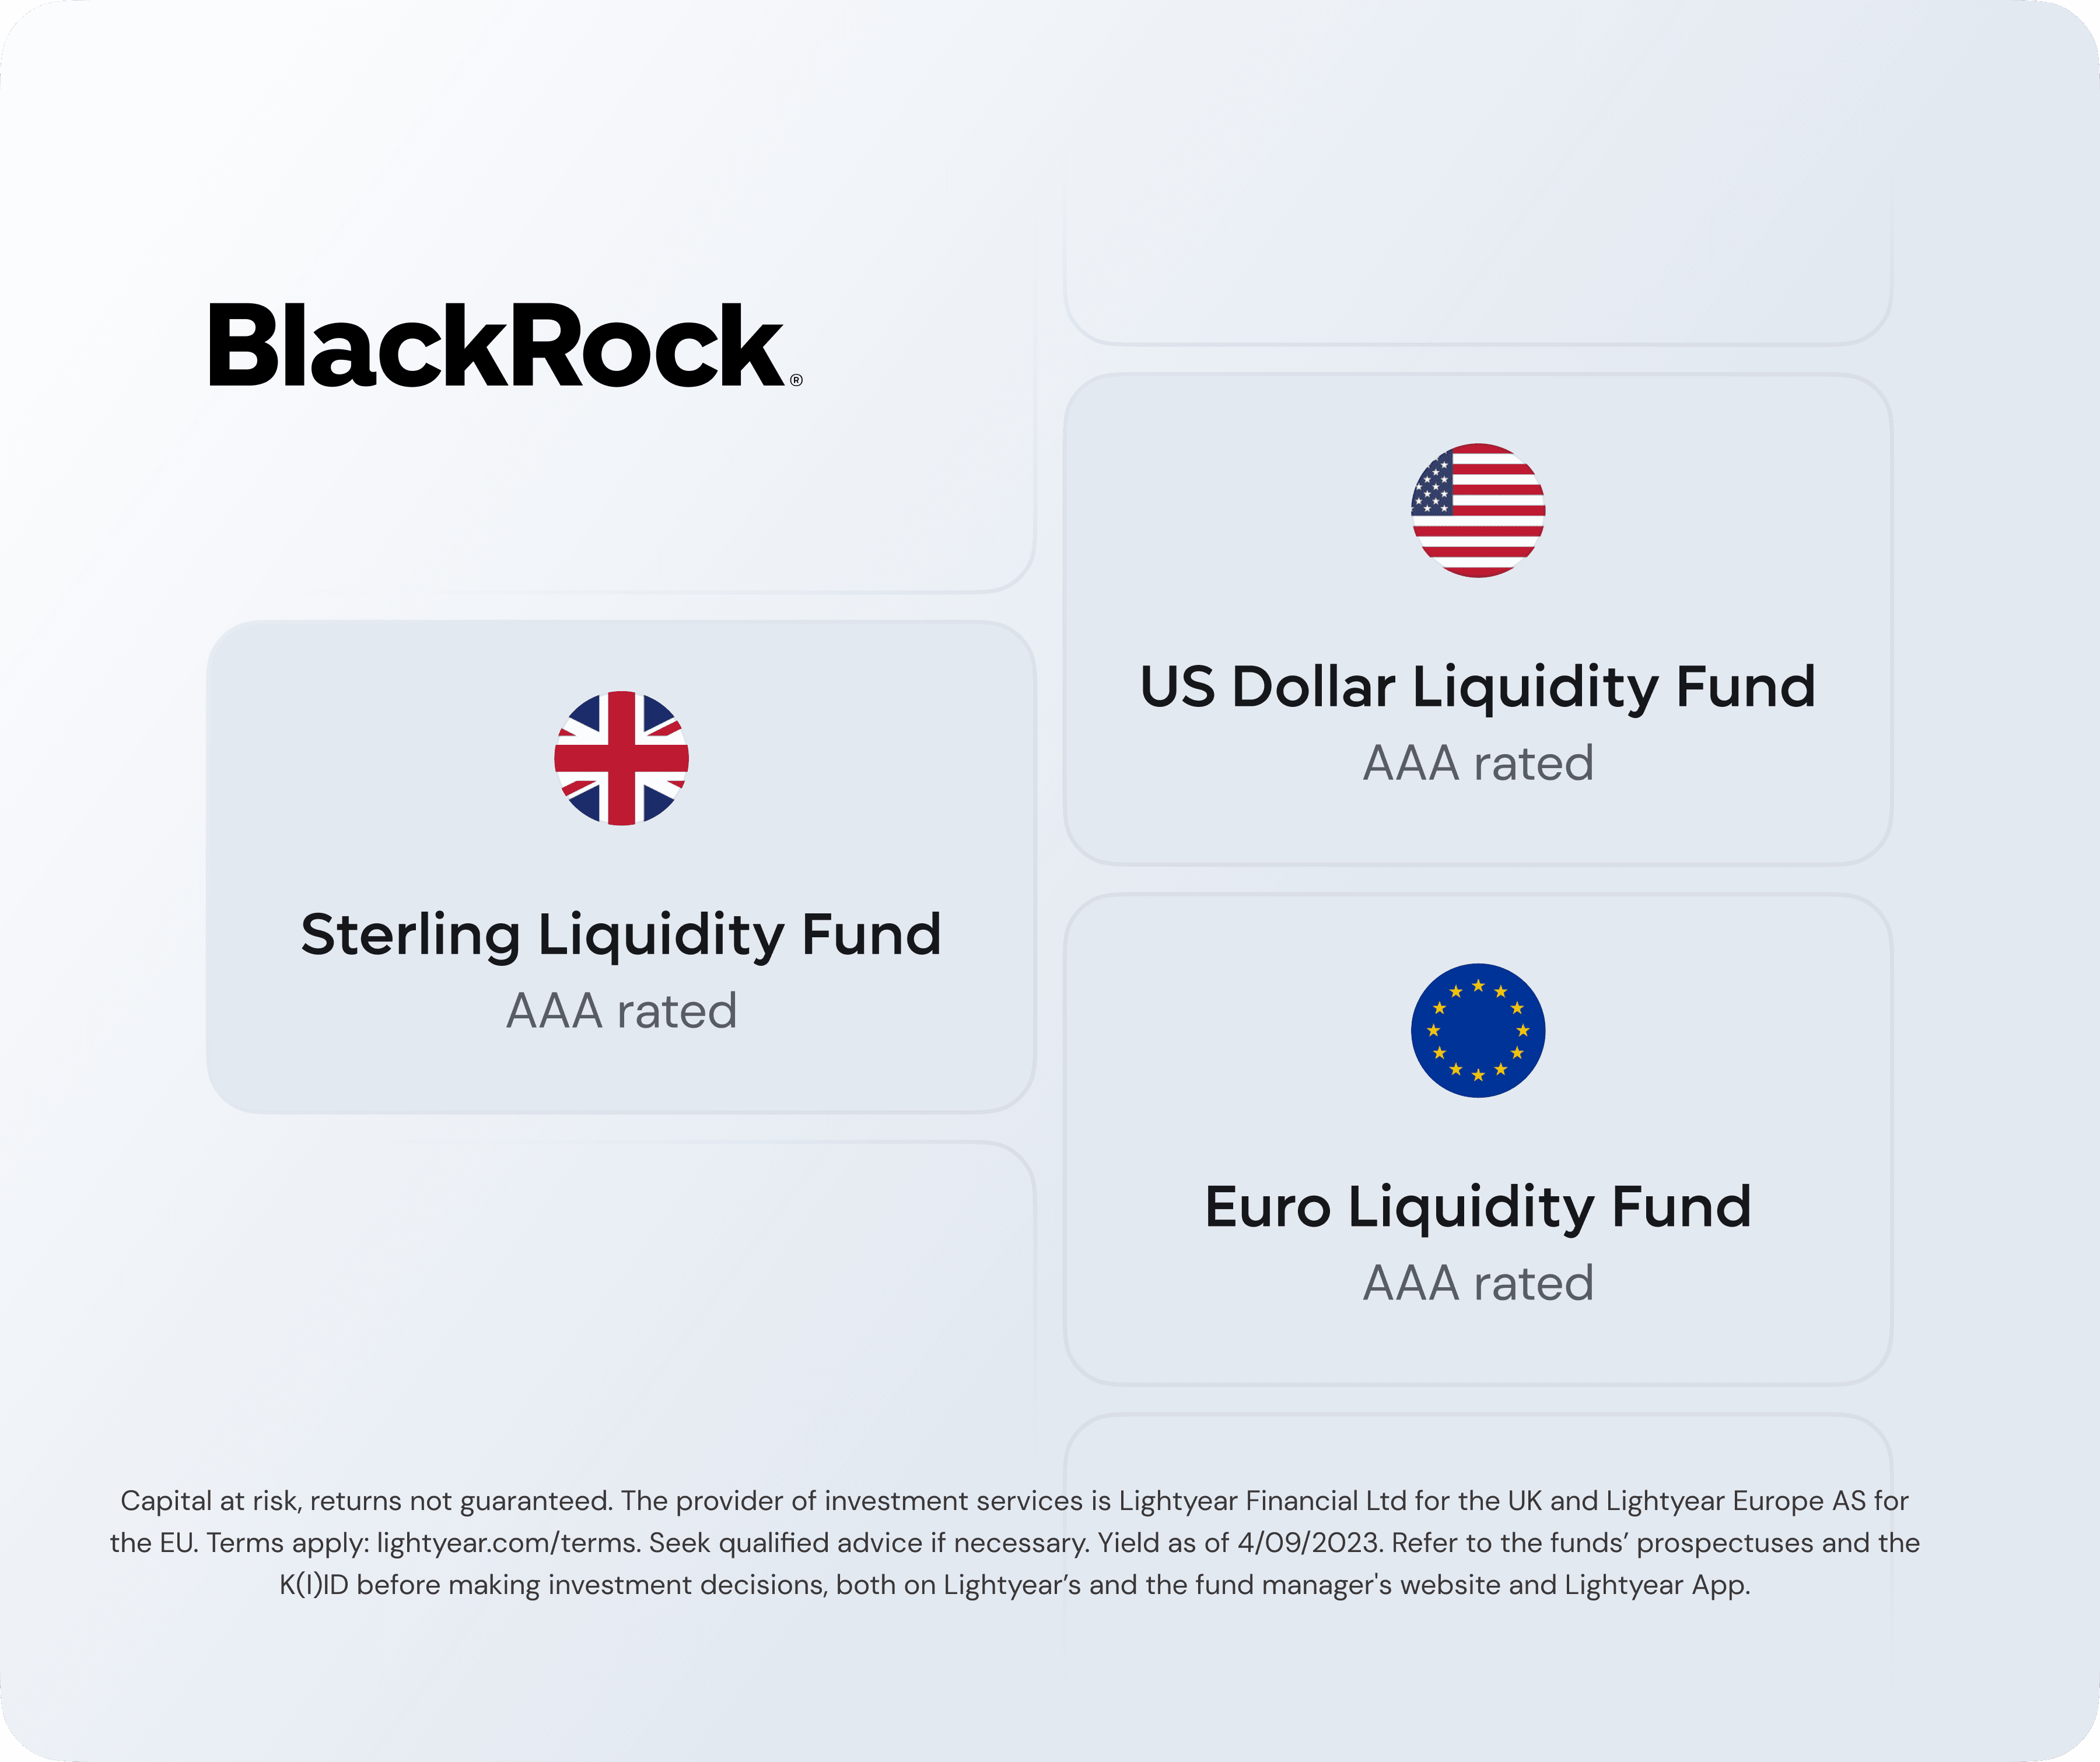 BlackRock Funds